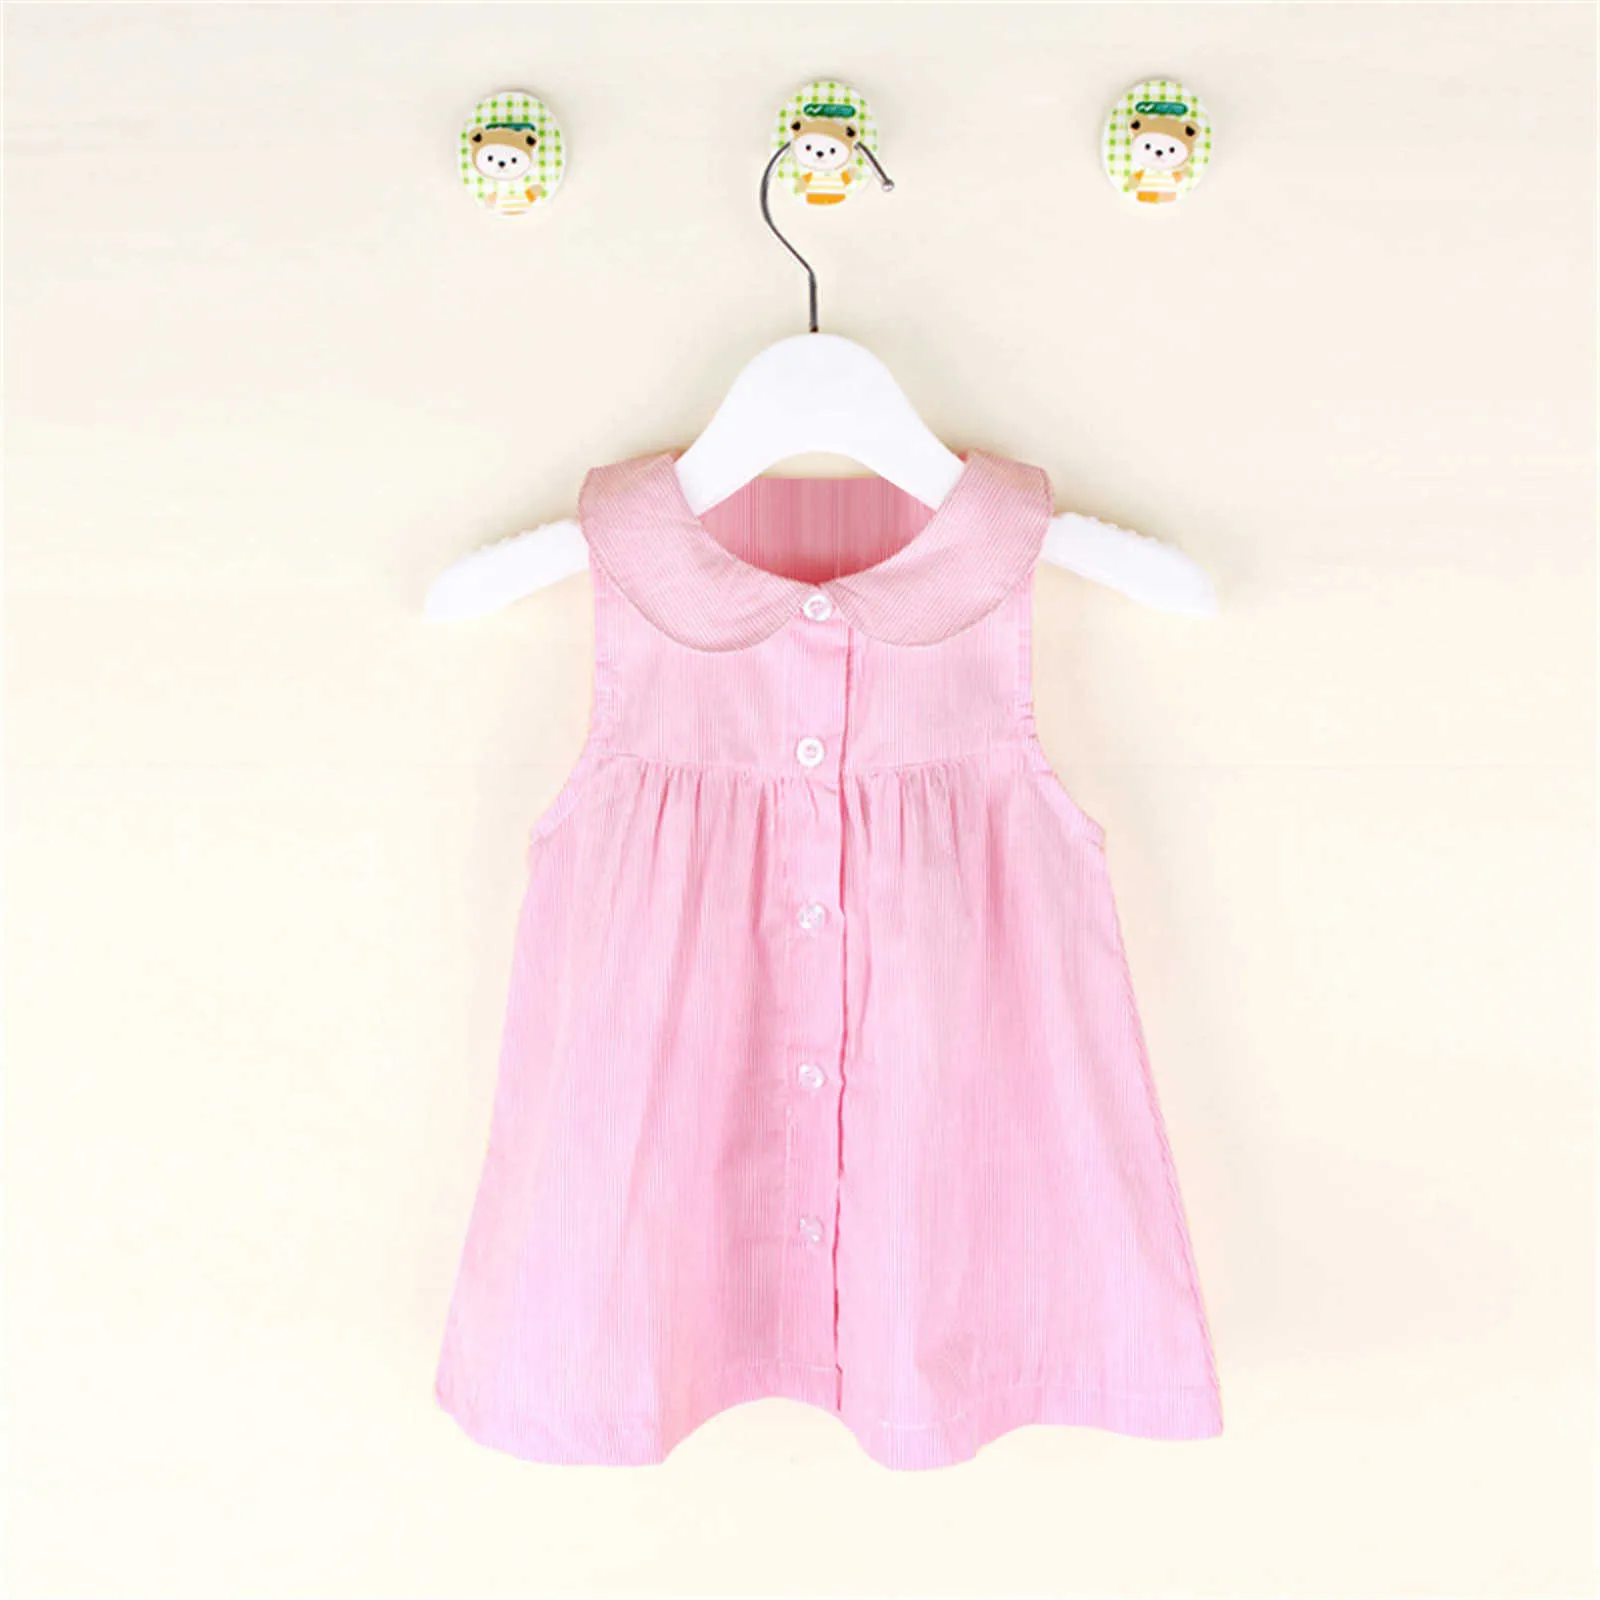 Col de poupée sans manches pour fille robes d'été rayé princesse tenue décontractée vêtements pour enfants bébé filles bouton chemise robe Jurk Q0716